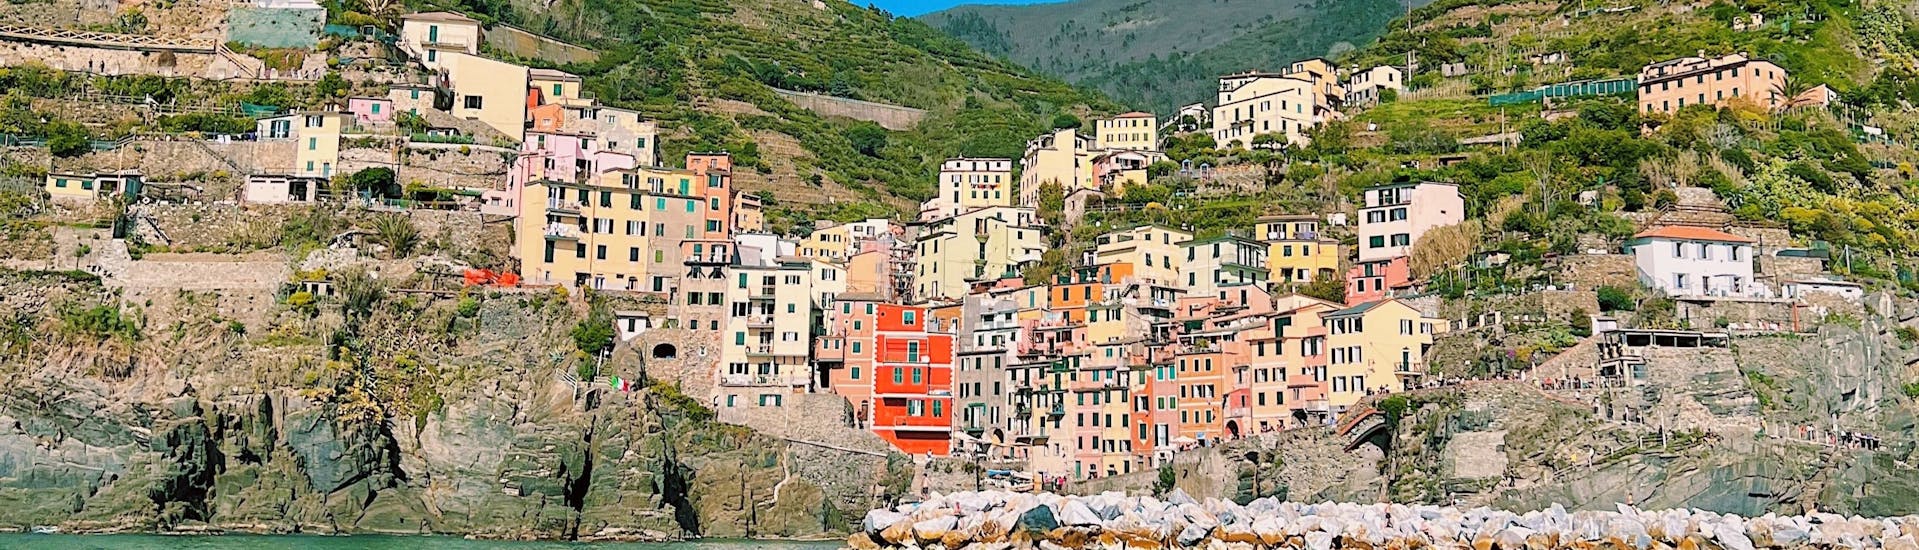 El pueblo de Riomaggiore visto desde el mar durante la excursión en velero desde La Spezia a Cinque Terre con Almuerzo con Velagiovane.